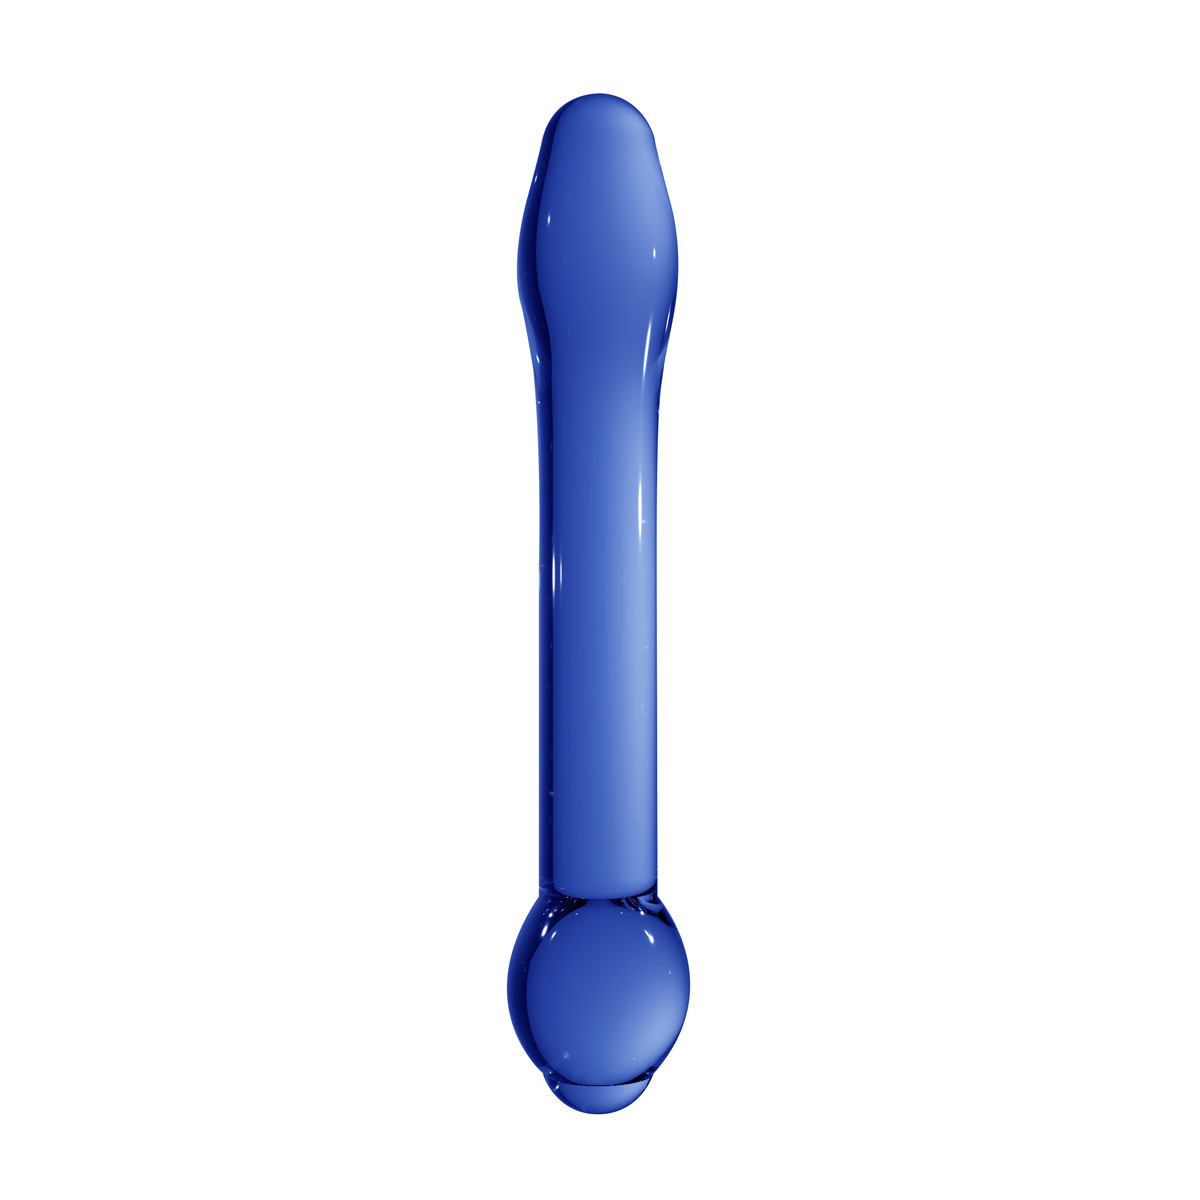 Cтимулятор ChrystalinoTreasure небьющаяся игрушка,18 cм (синий) - фото 1